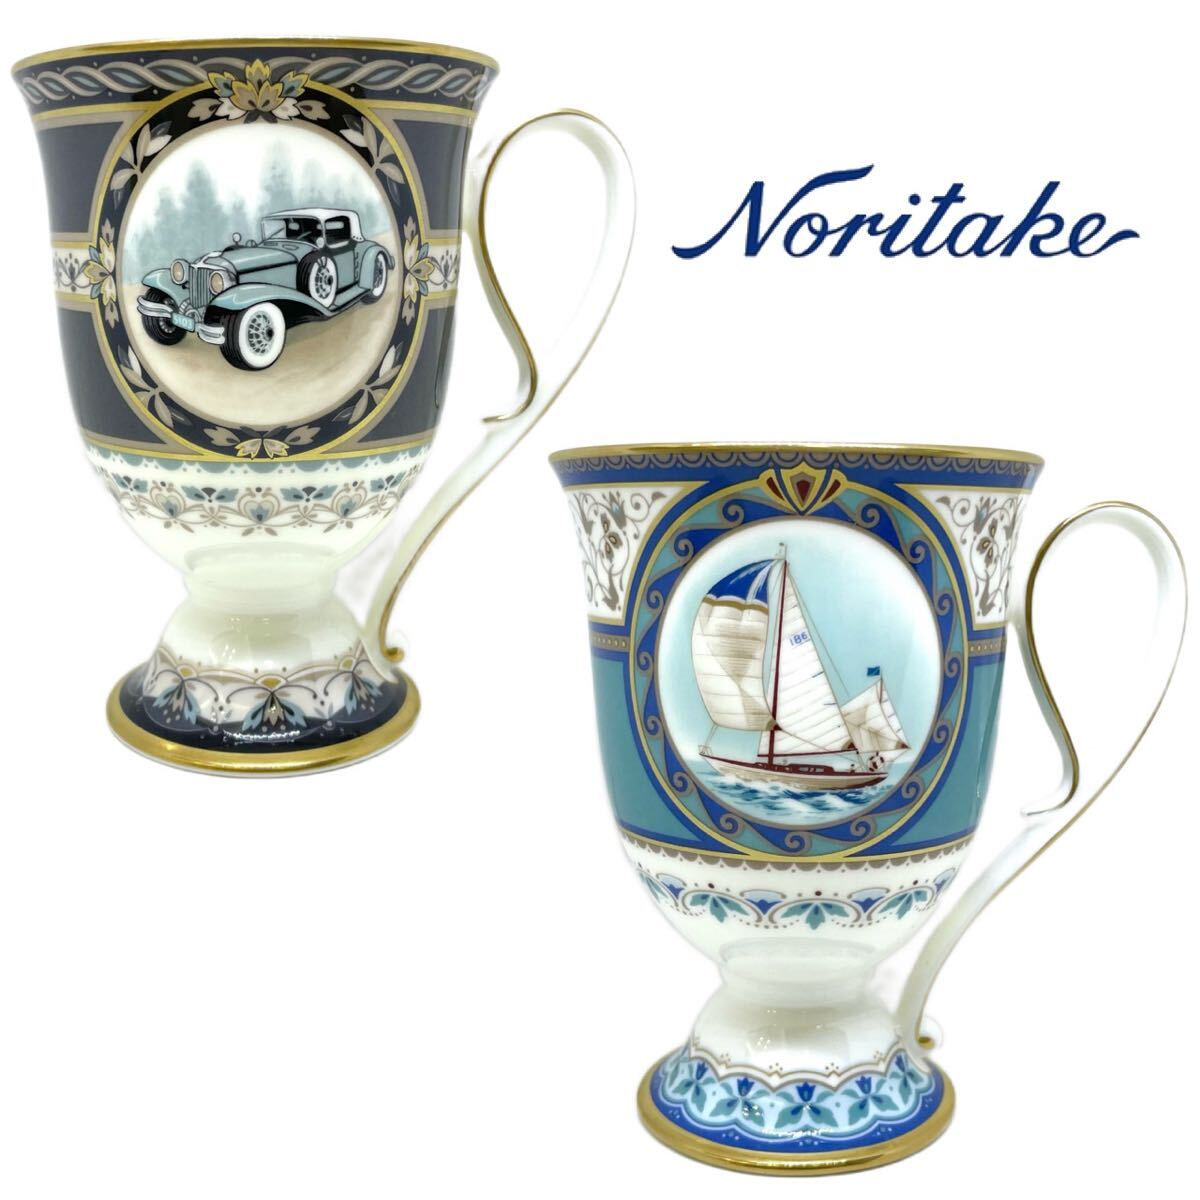 送料無料 Noritake ノリタケ コーヒーカップ マグカップ 食器 茶器 陶器 洋食器 58057C/4419 ヨット 58057C/4420 クラシックカー 2個セット